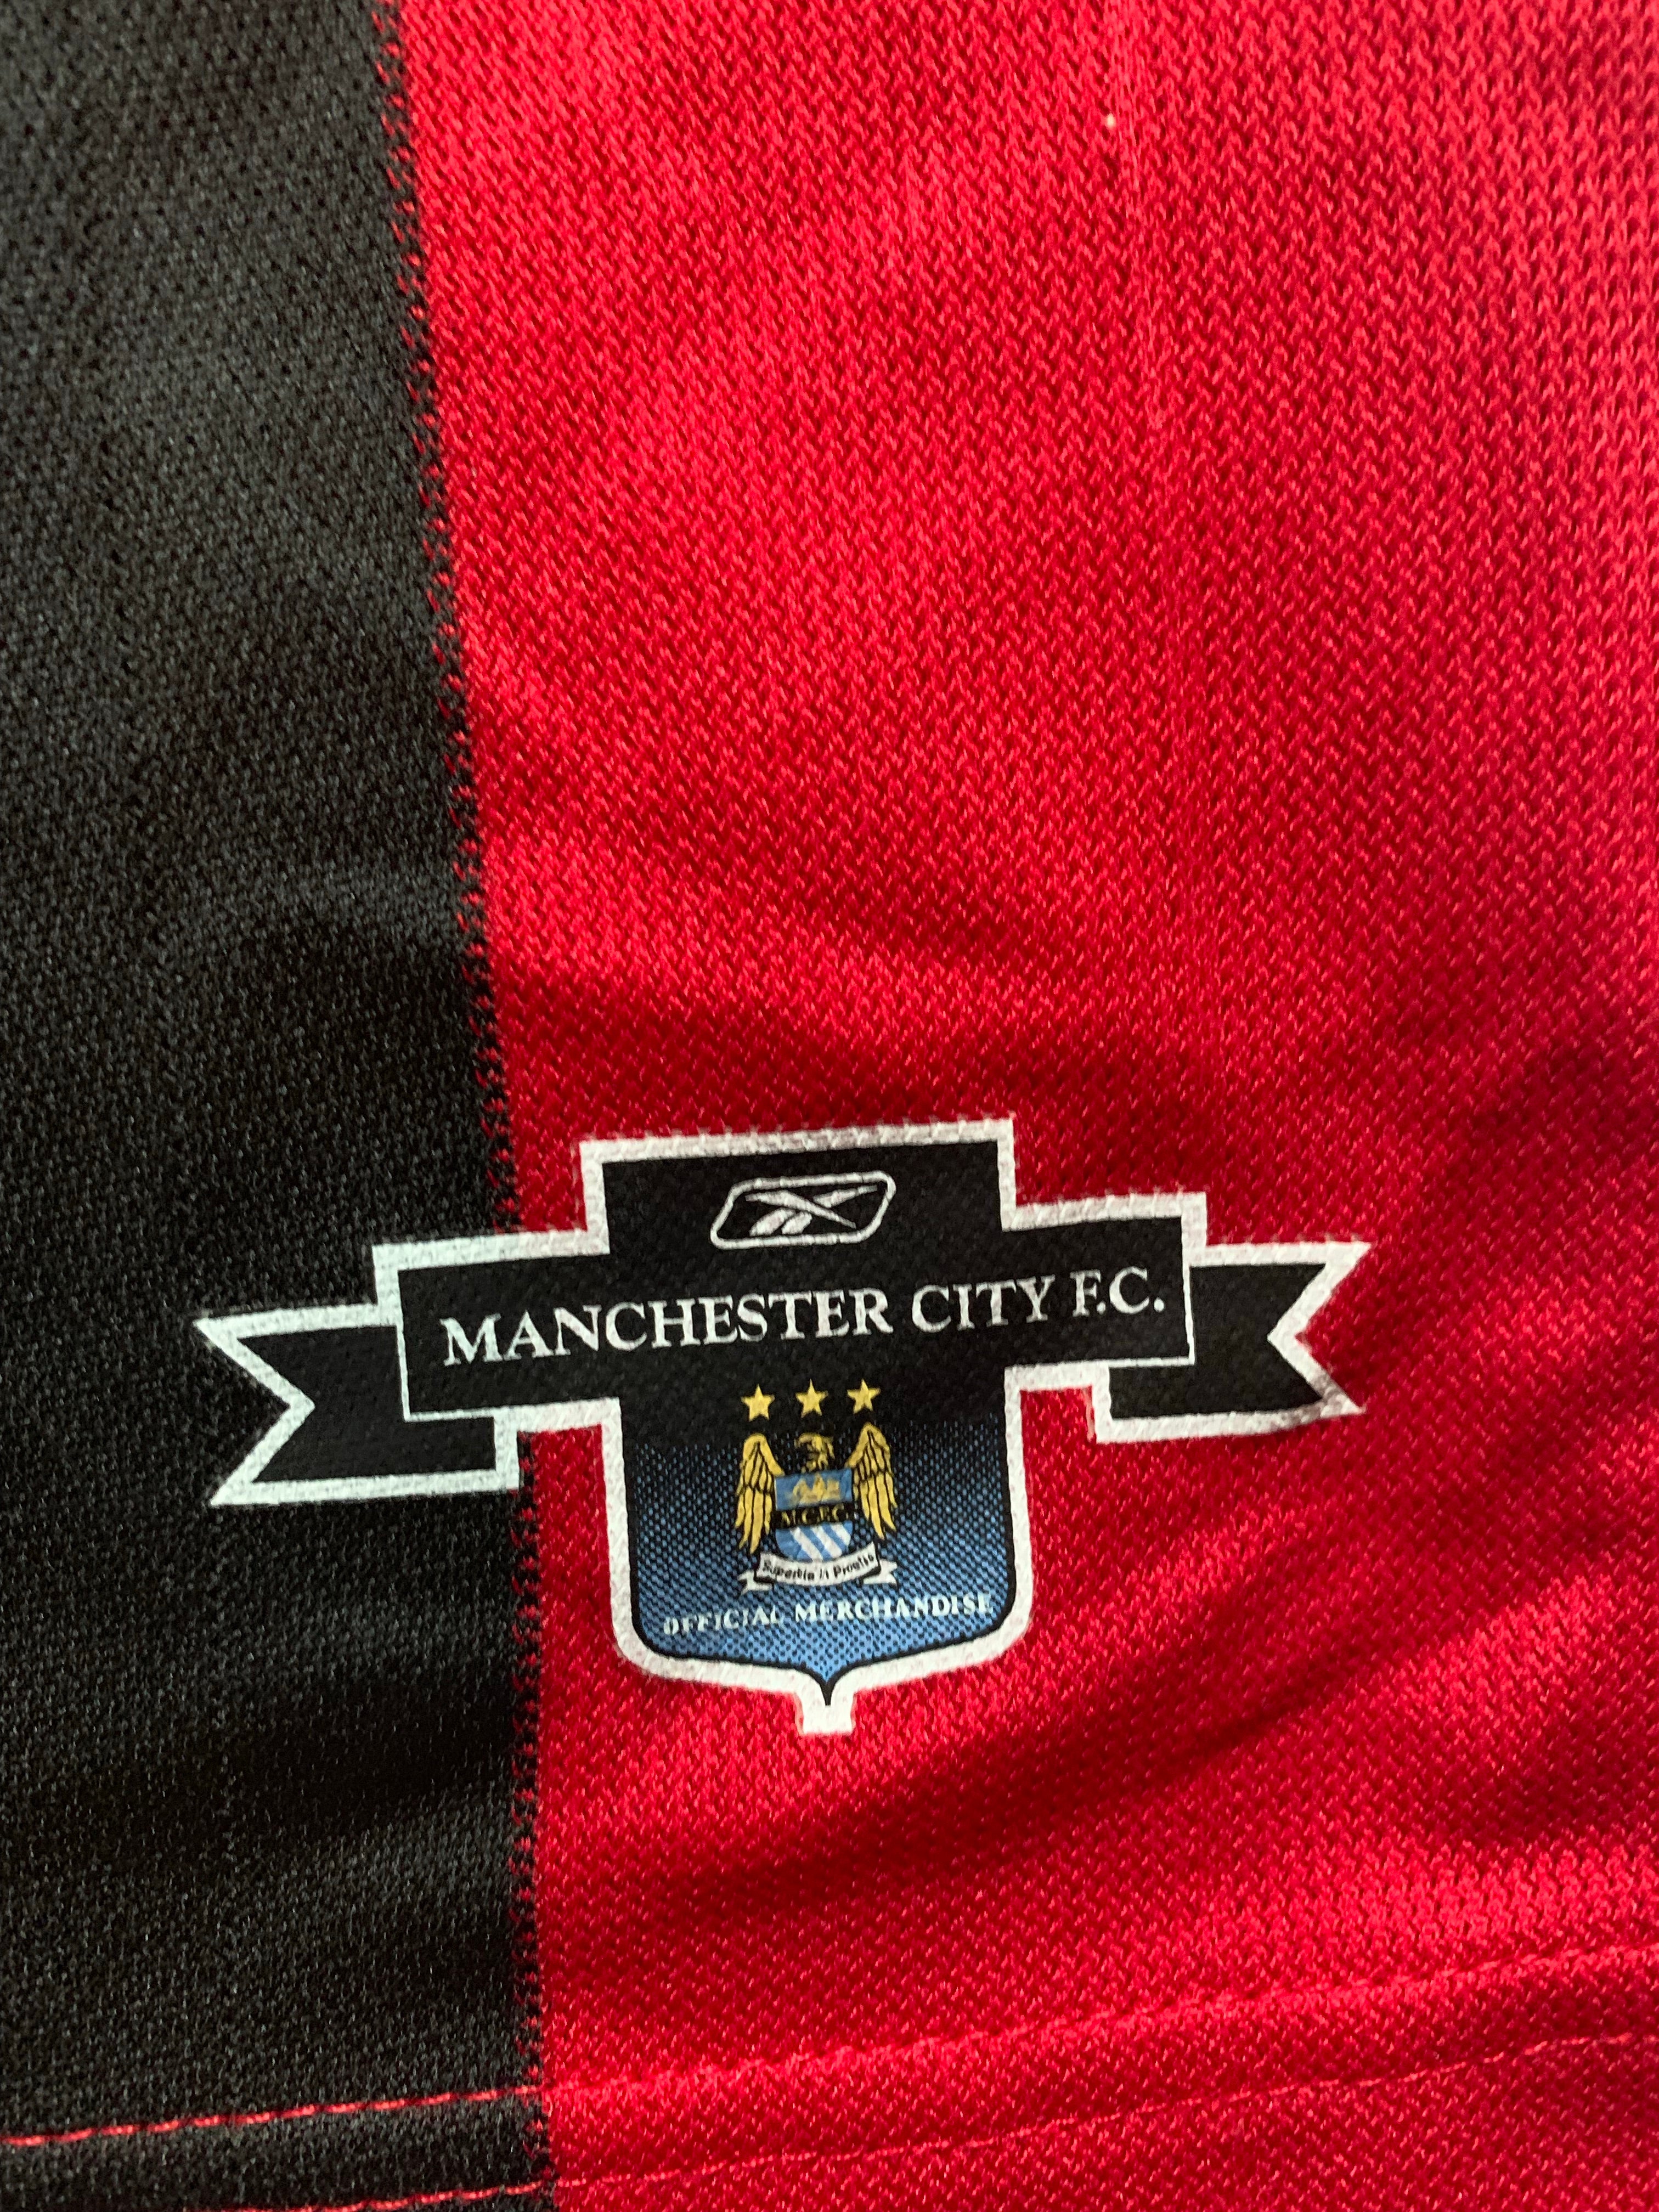 2003/04 Manchester City Away Shirt (L) 8/10